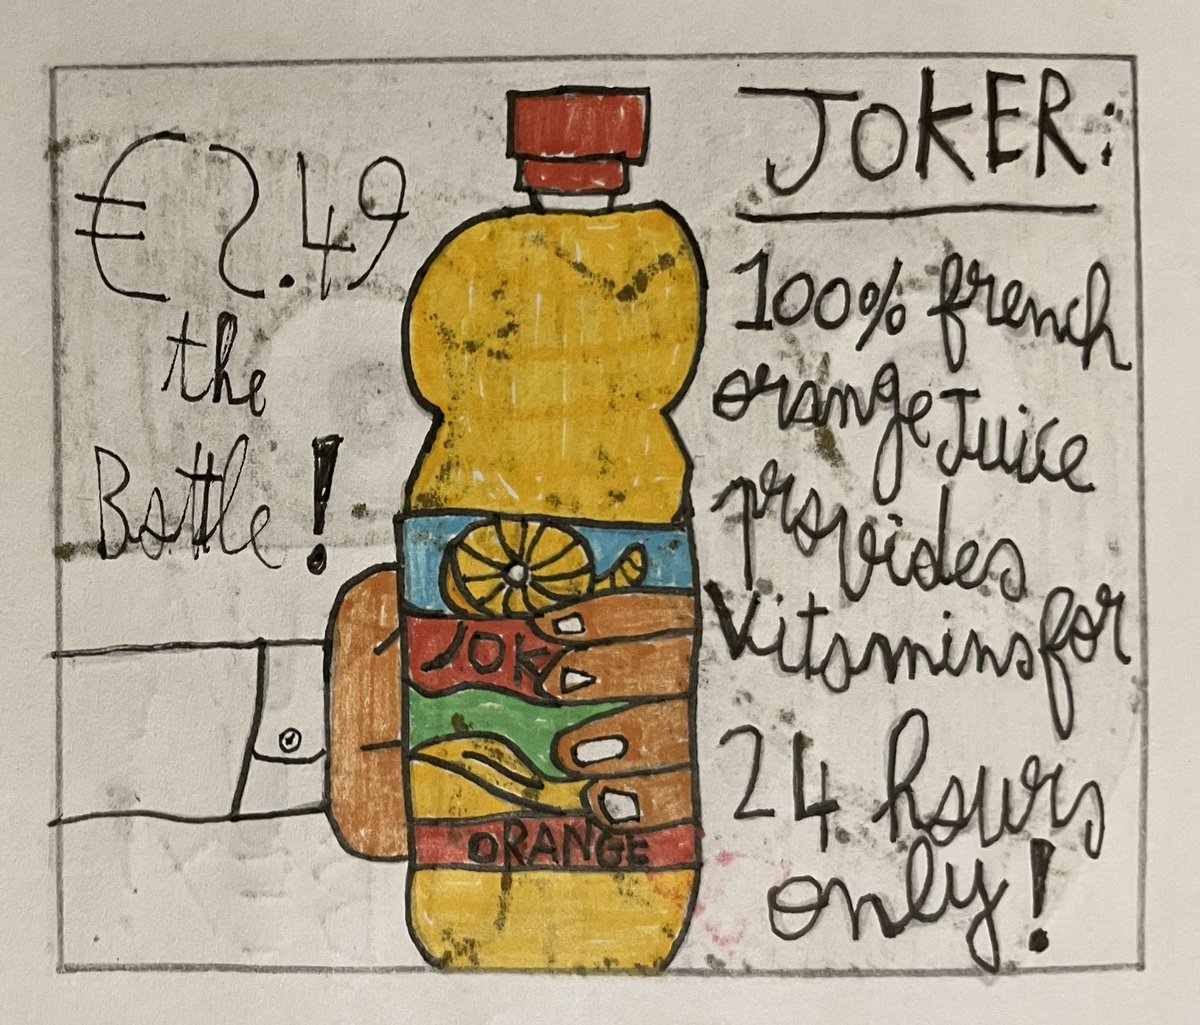 #Baptiste&Mathis
Page 67 (beginning)
#comedy #duo #comics #teenage #LegoJoker #joker #OrangeJuice #euro #CommercialBreak